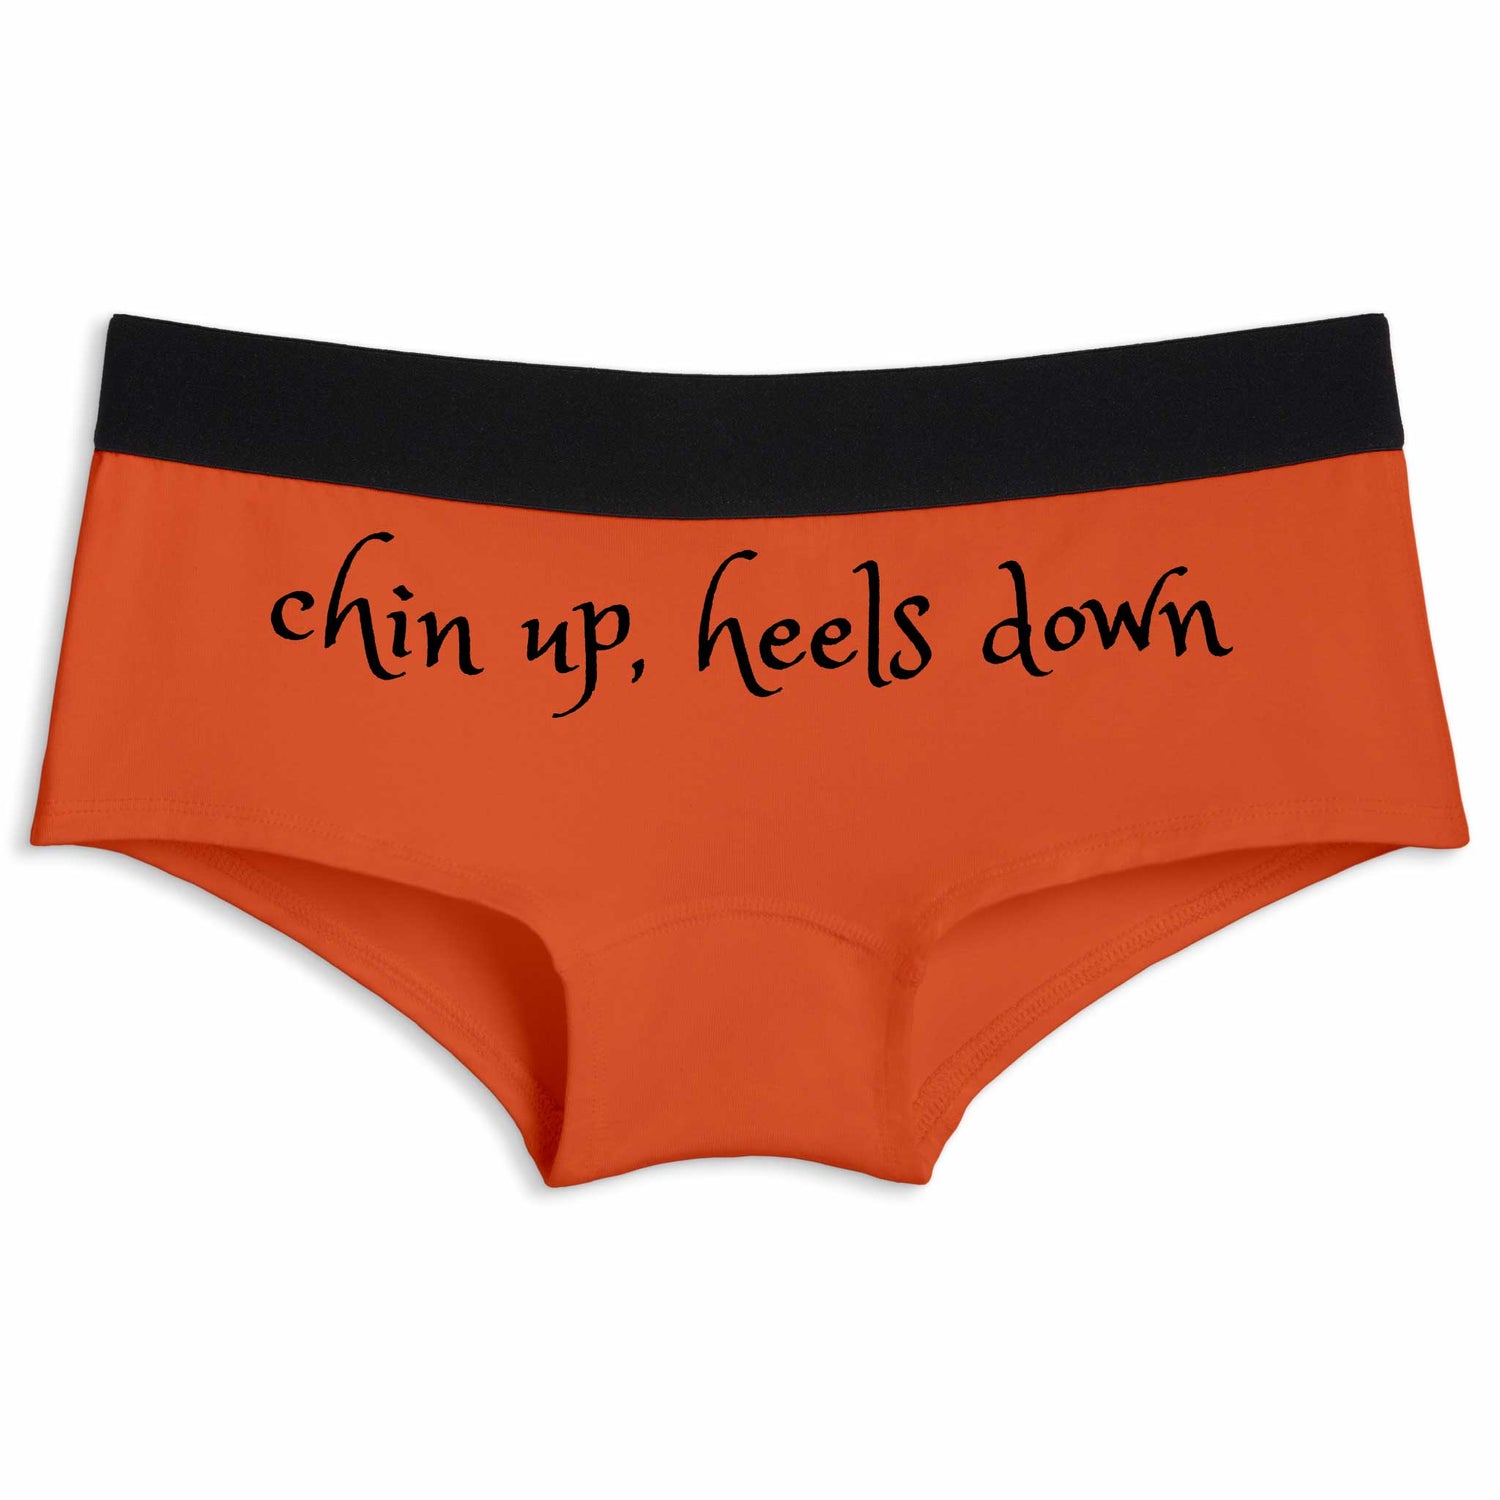 Chin up heels down | Boyshort underwear